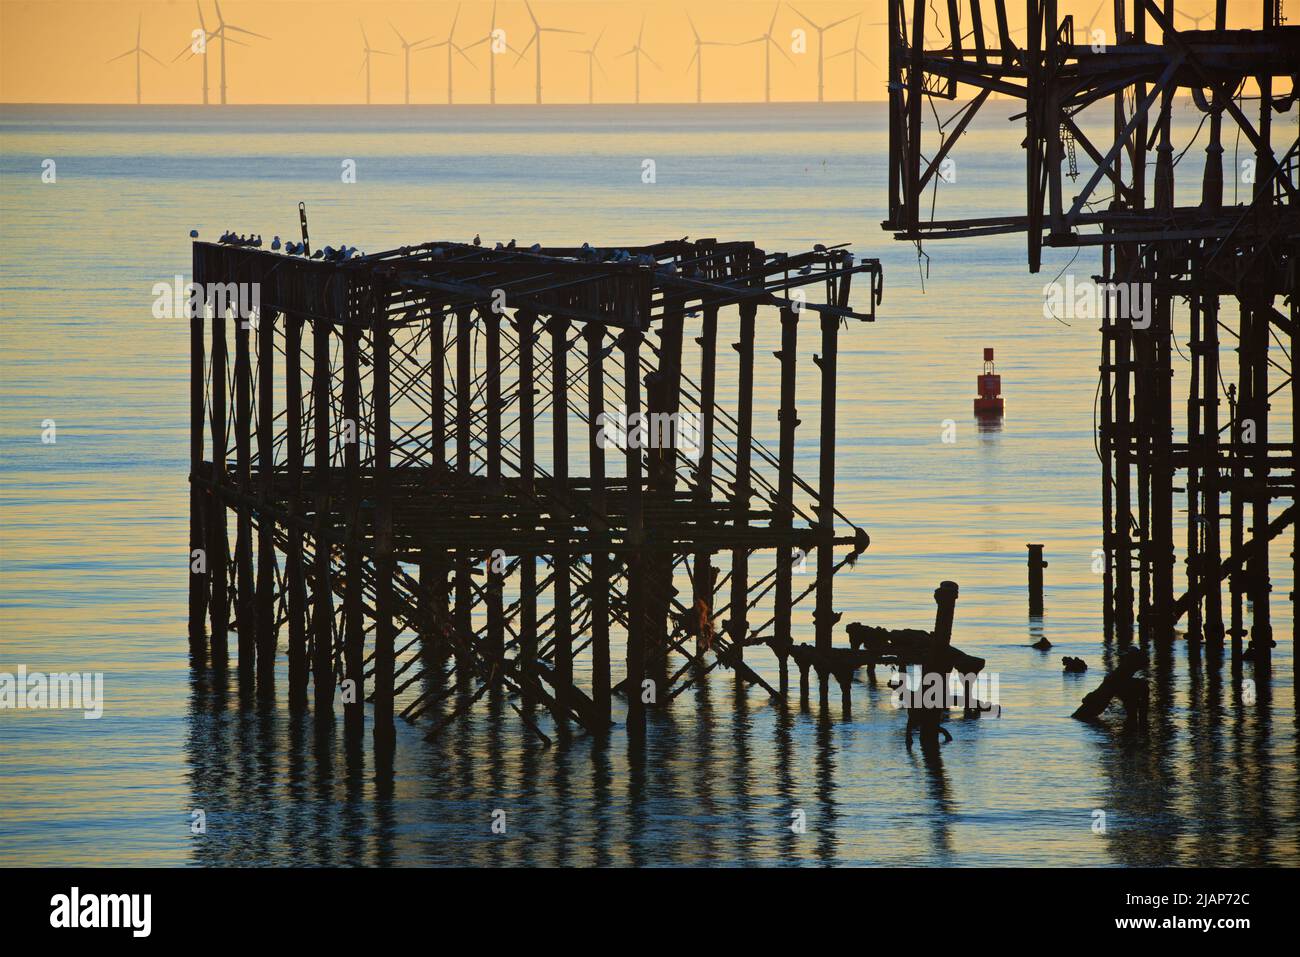 Detalle de la estructura de hierro derelicta y desintegradora del West Pier al atardecer, Brighton. Construido en 1866 y cerrado en 1975, el muelle sigue catalogado como Grado I y es un monumento bien conocido. El parque eólico marino Rampion se puede ver en el horizonte. Las aves marinas se sientan en el muelle Foto de stock